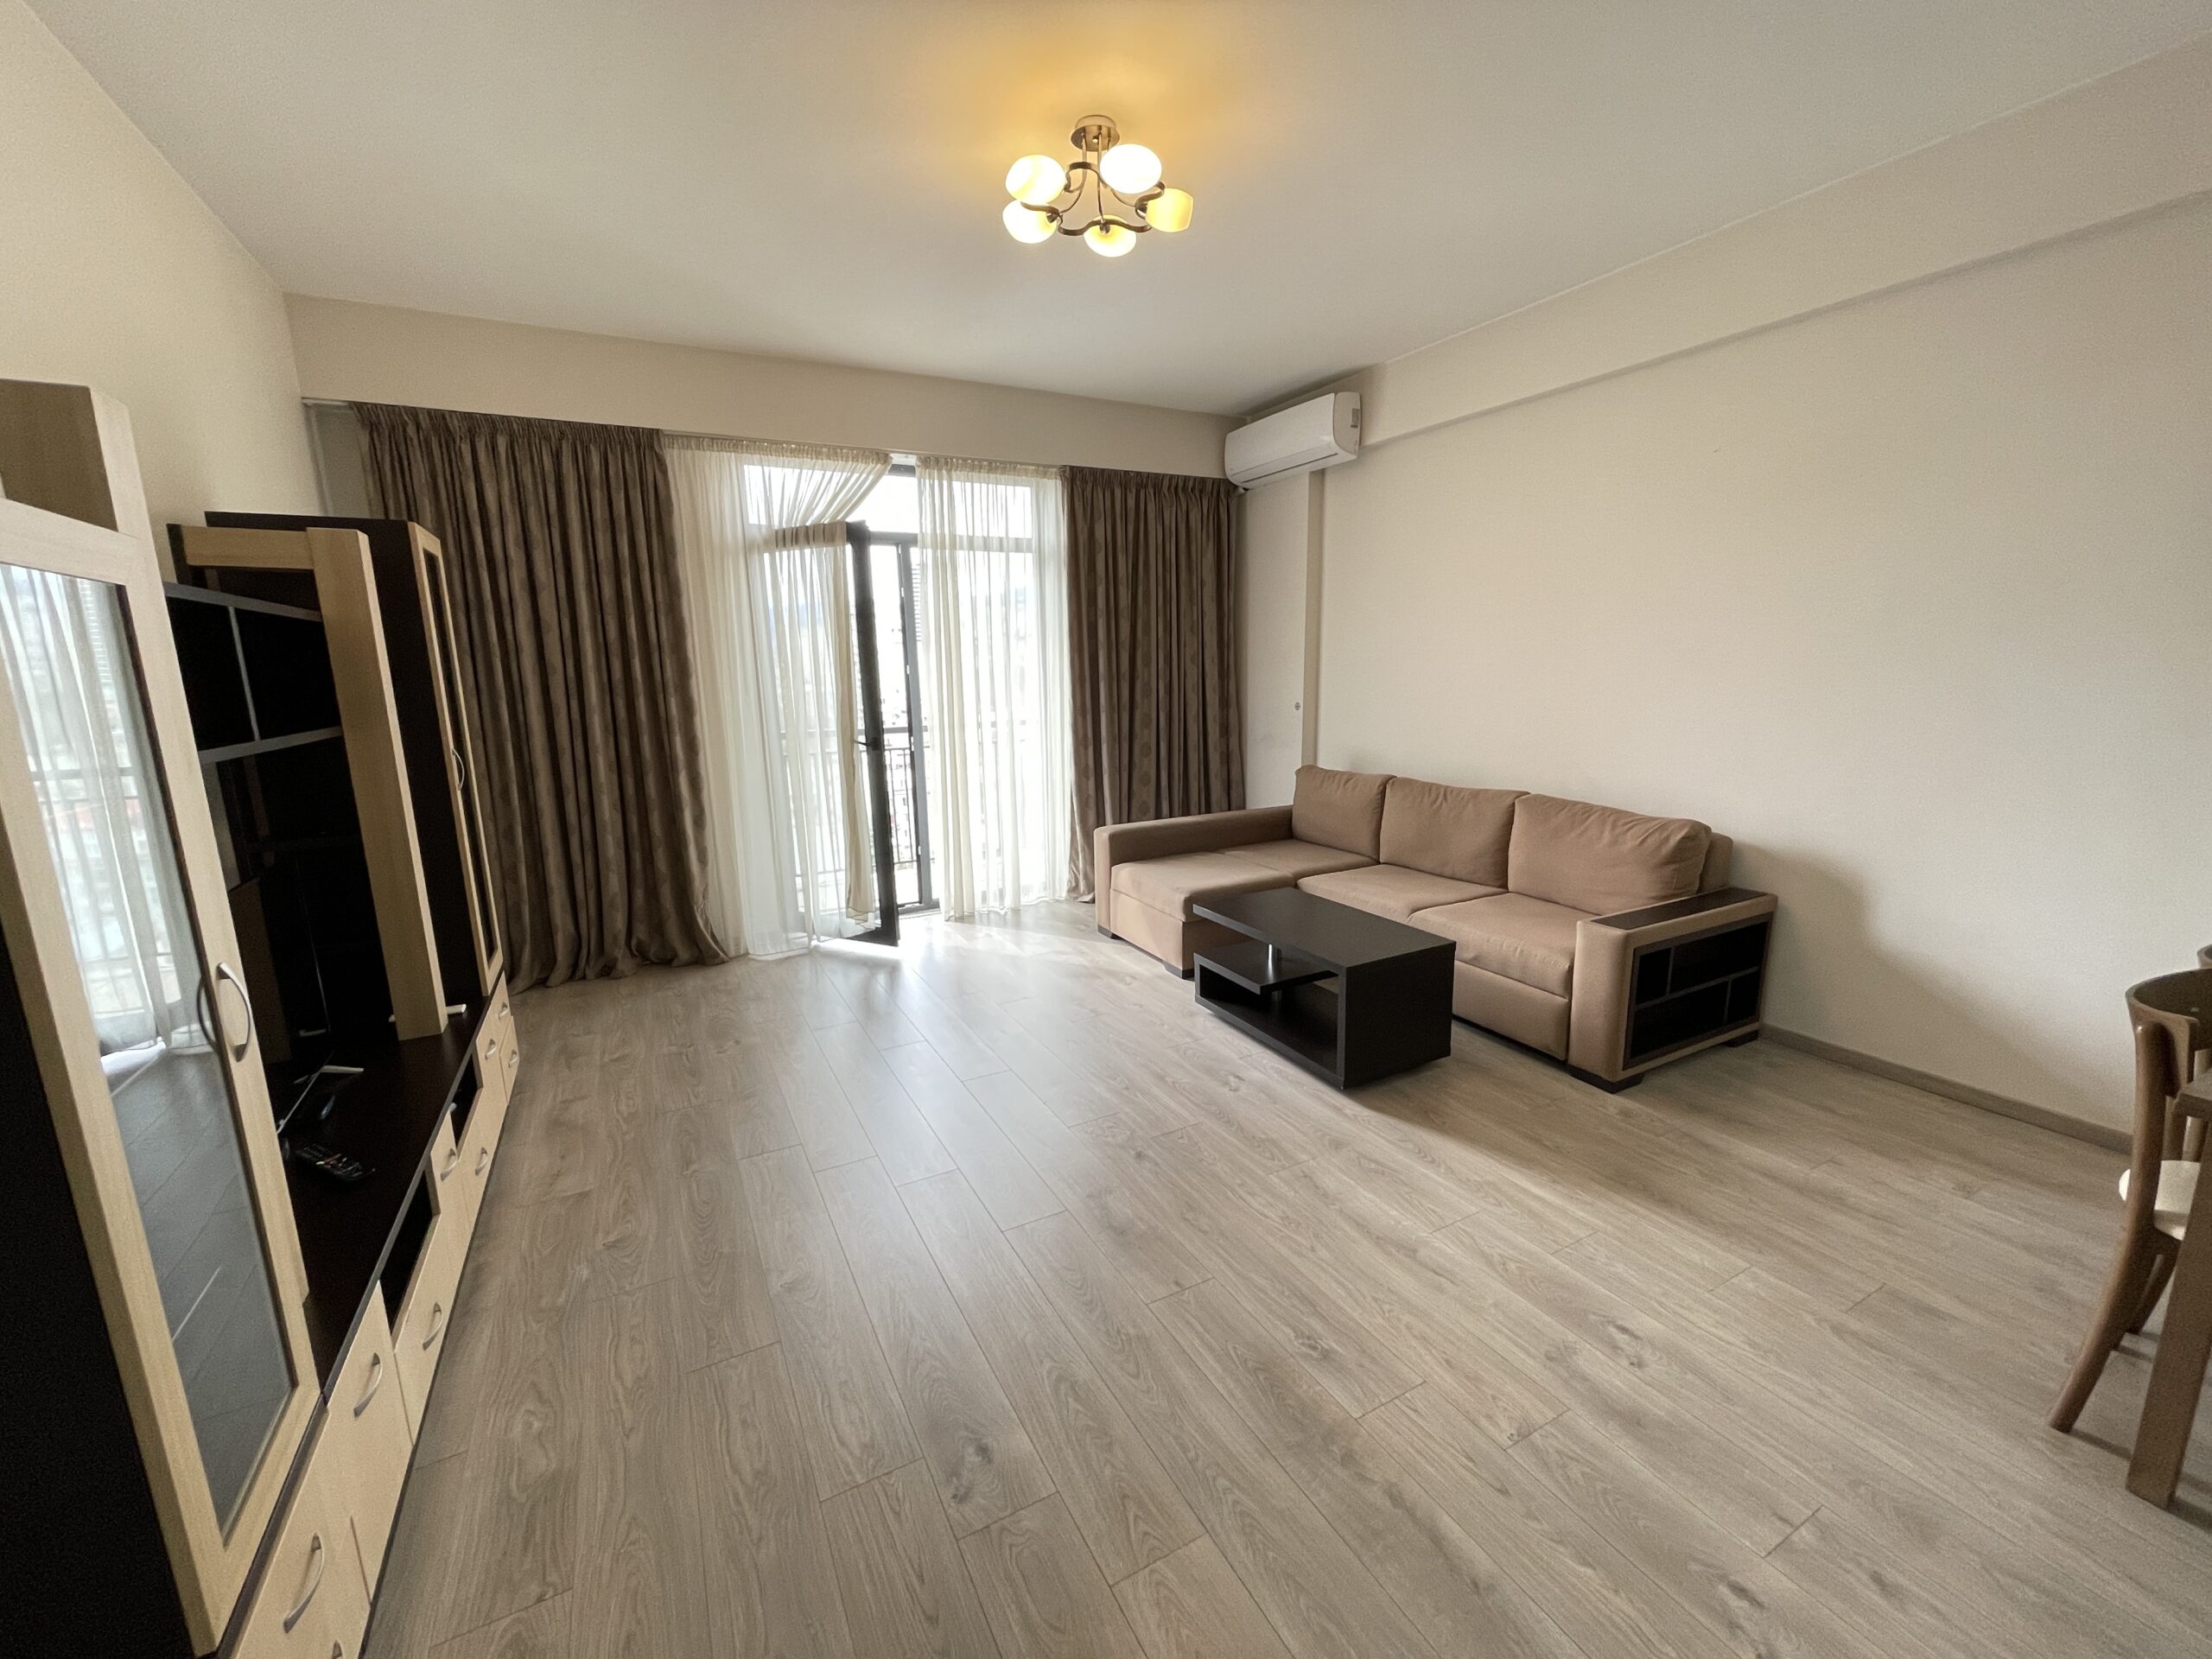 2-Room Apartment For Rent At “M2 on Kazbegi Ave”